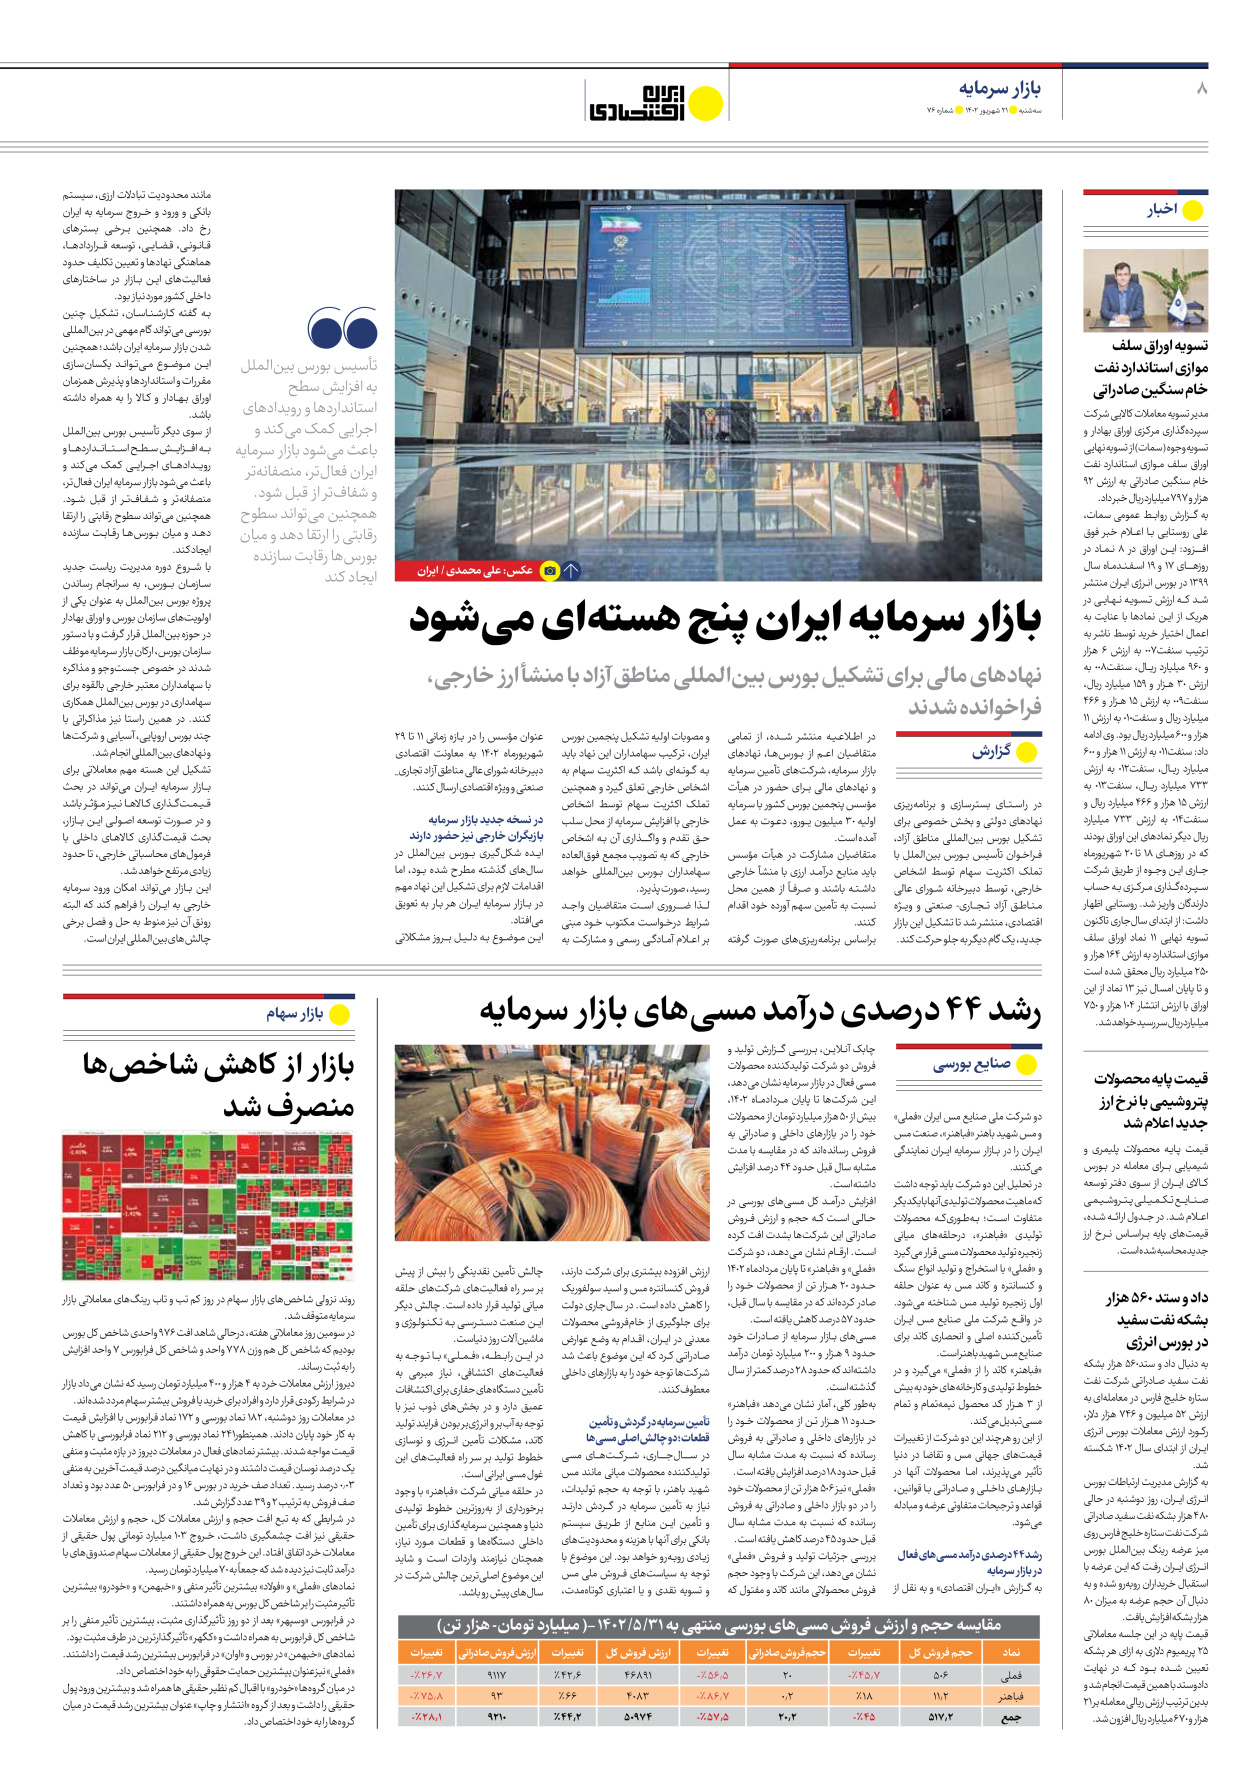 روزنامه ایران اقتصادی - شماره هفتاد و شش - ۲۱ شهریور ۱۴۰۲ - صفحه ۸